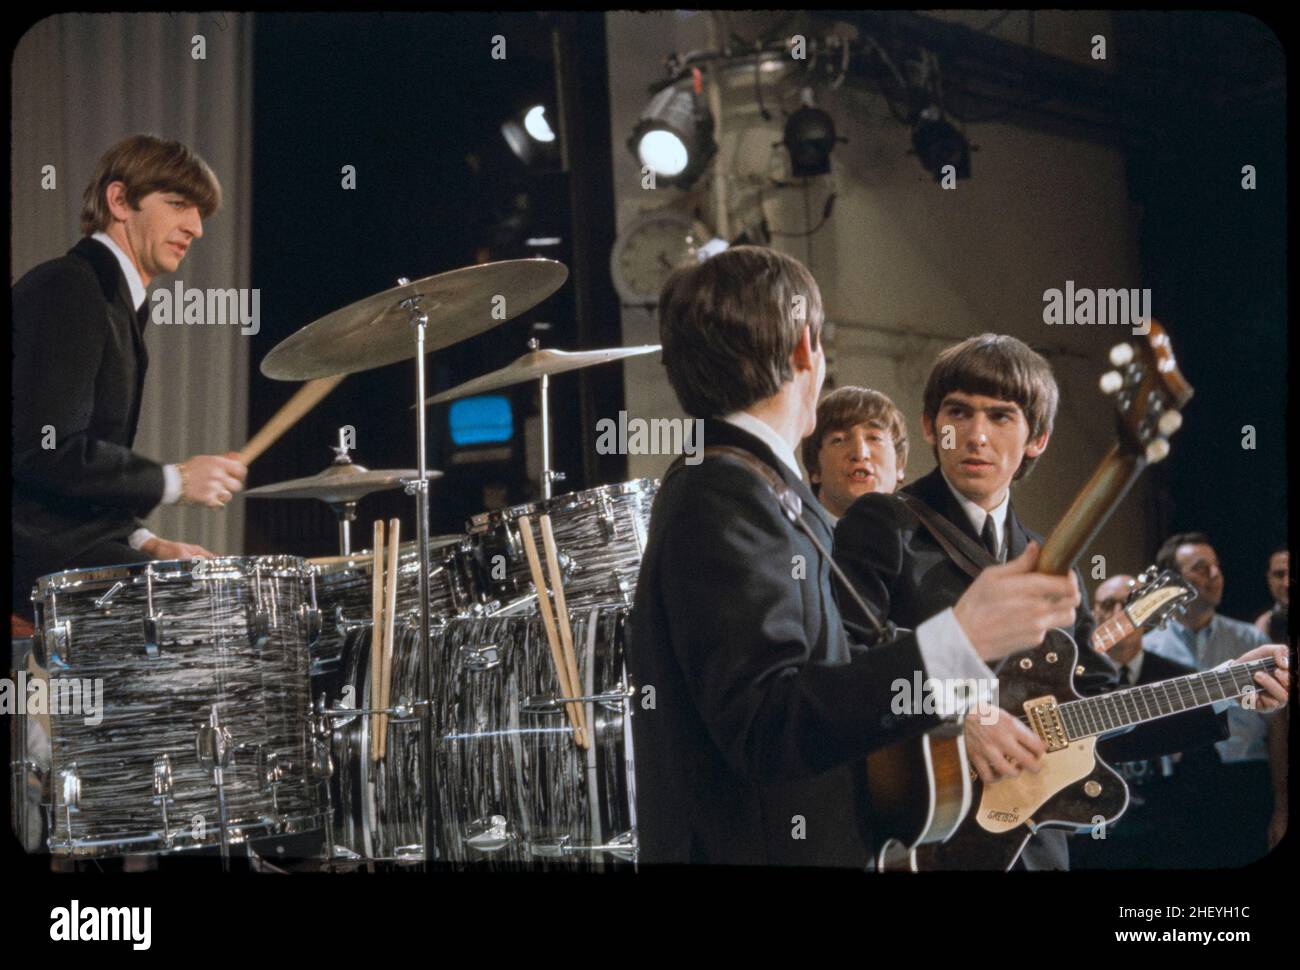 The Beatles sur scène au Ed Sullivan Show, New York.1964. Gotfryd, Bernard, photographe. Banque D'Images